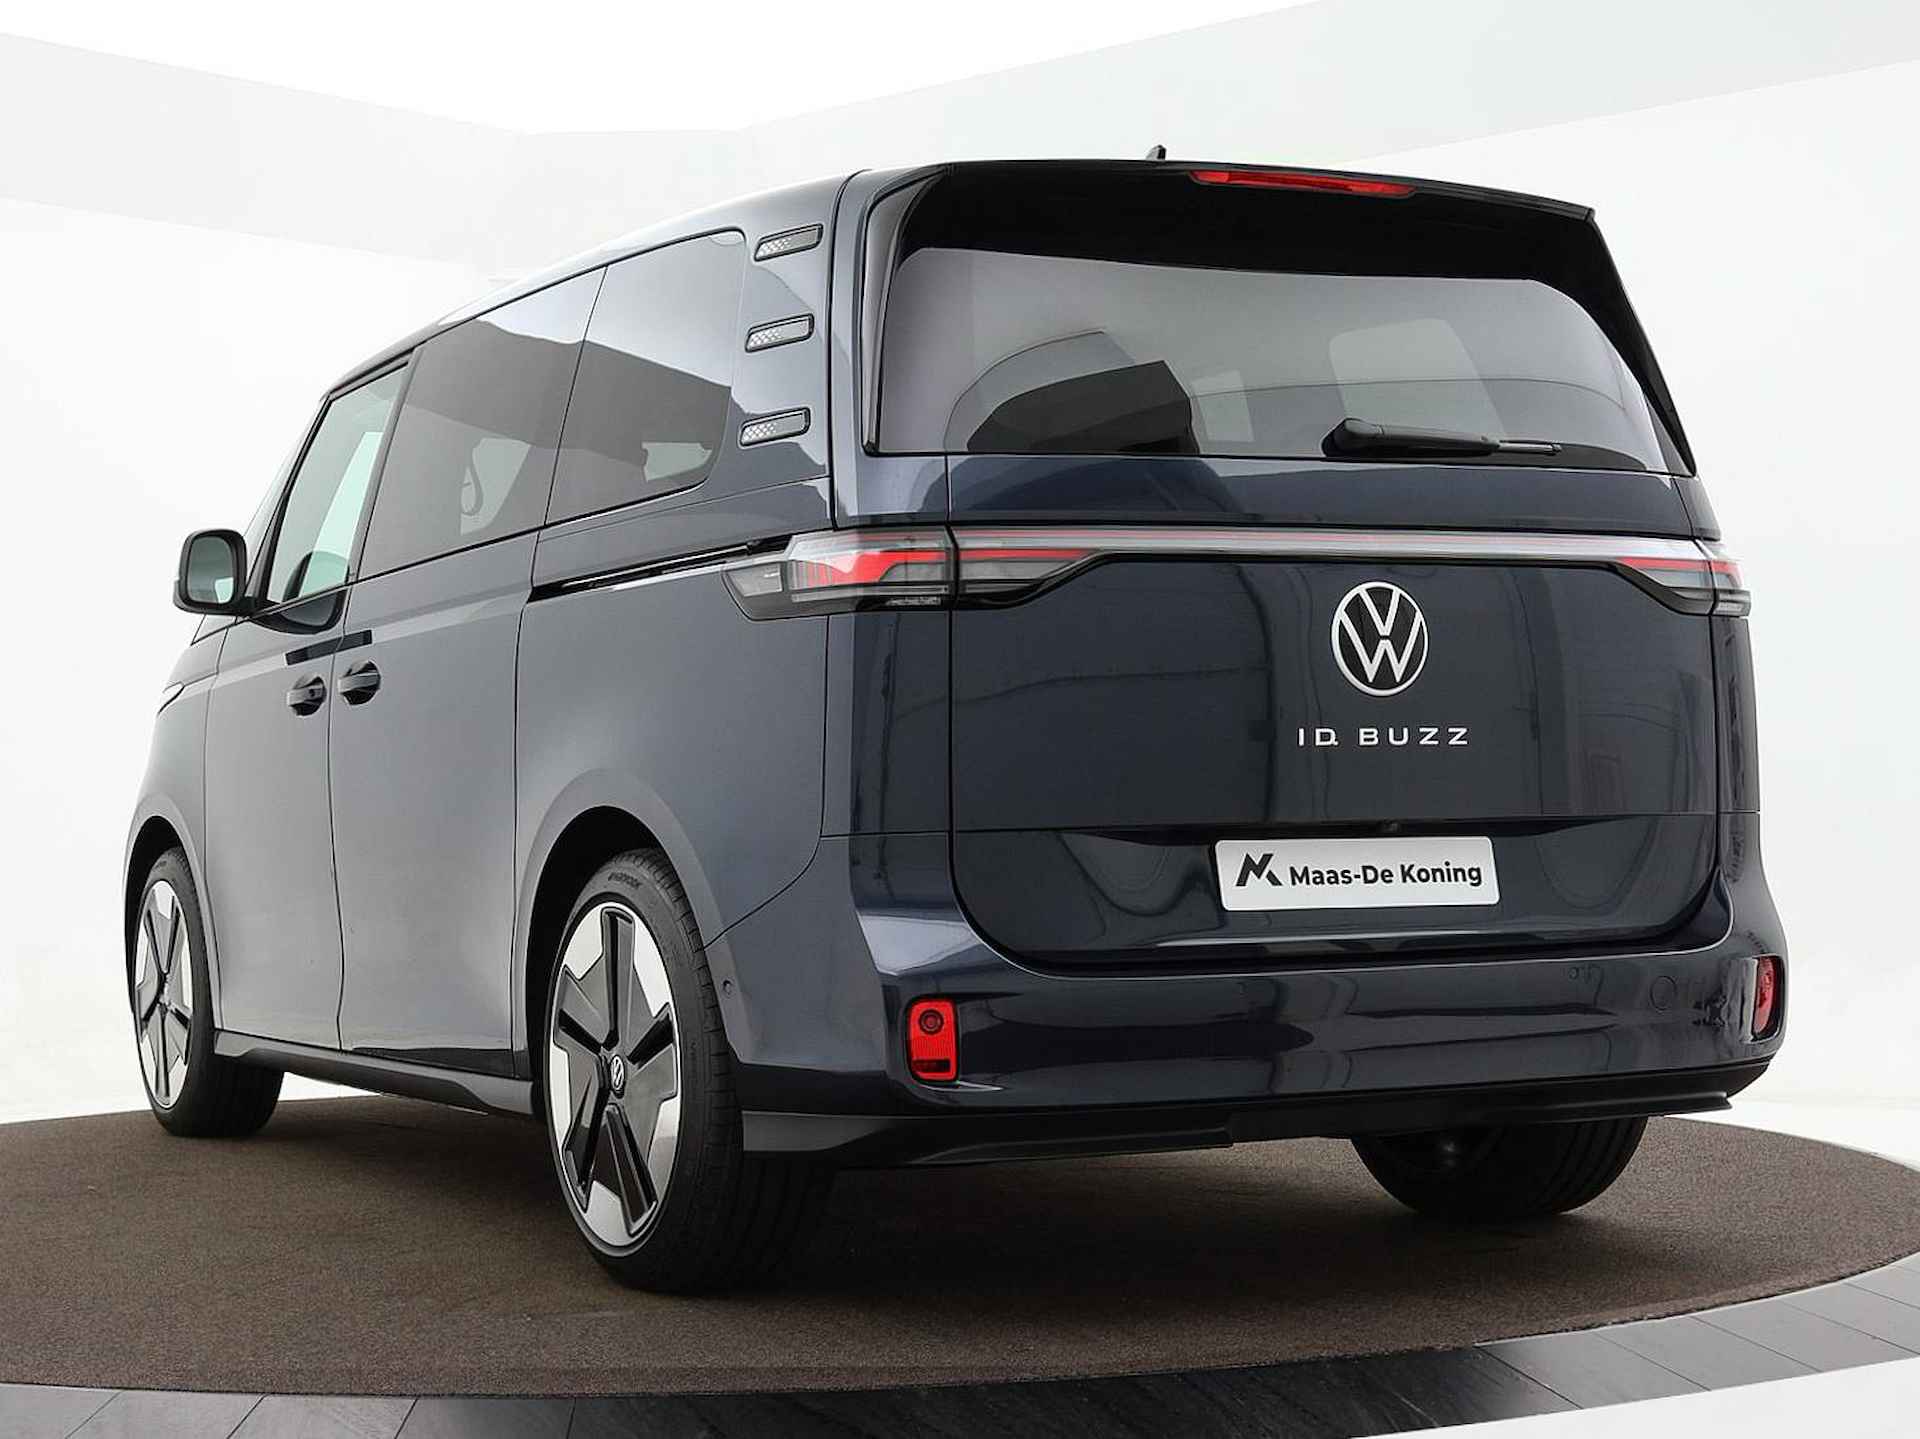 Volkswagen ID. Buzz pro advantage Elektromotor 150 kW / 204 pk electr. aandrijving · Assistance pakket · Design pakket · multimedia pakket plus · open & close pakket plus · trekhaak · MEGA Sale - 3/40